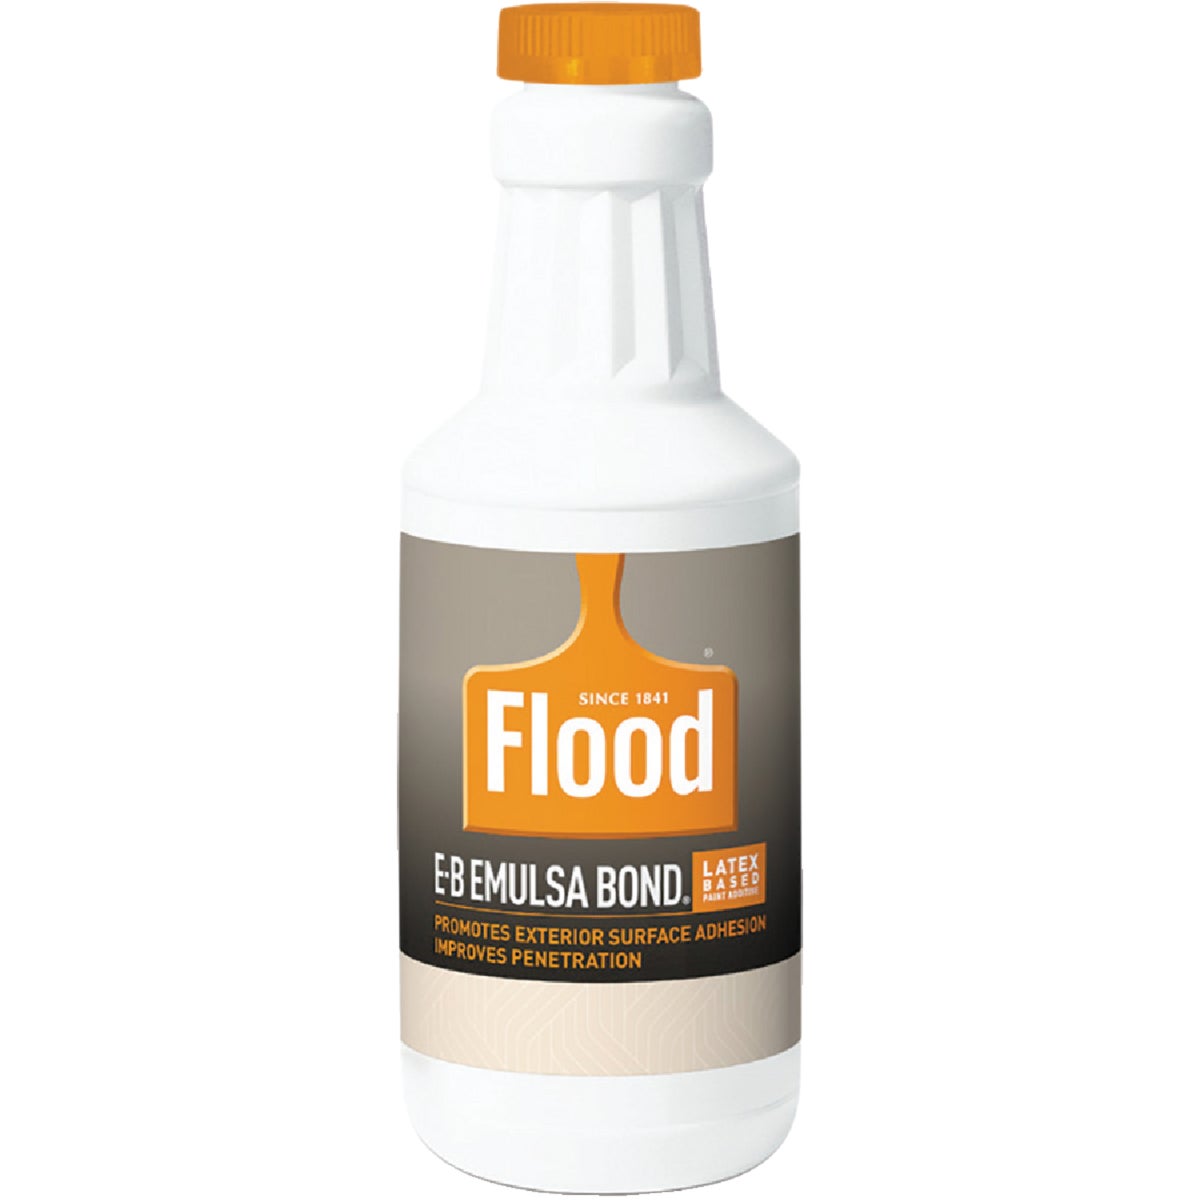 FLD41 04 Flood E-B Emulsa-Bond Stir-In Bonding Paint Primer Additive